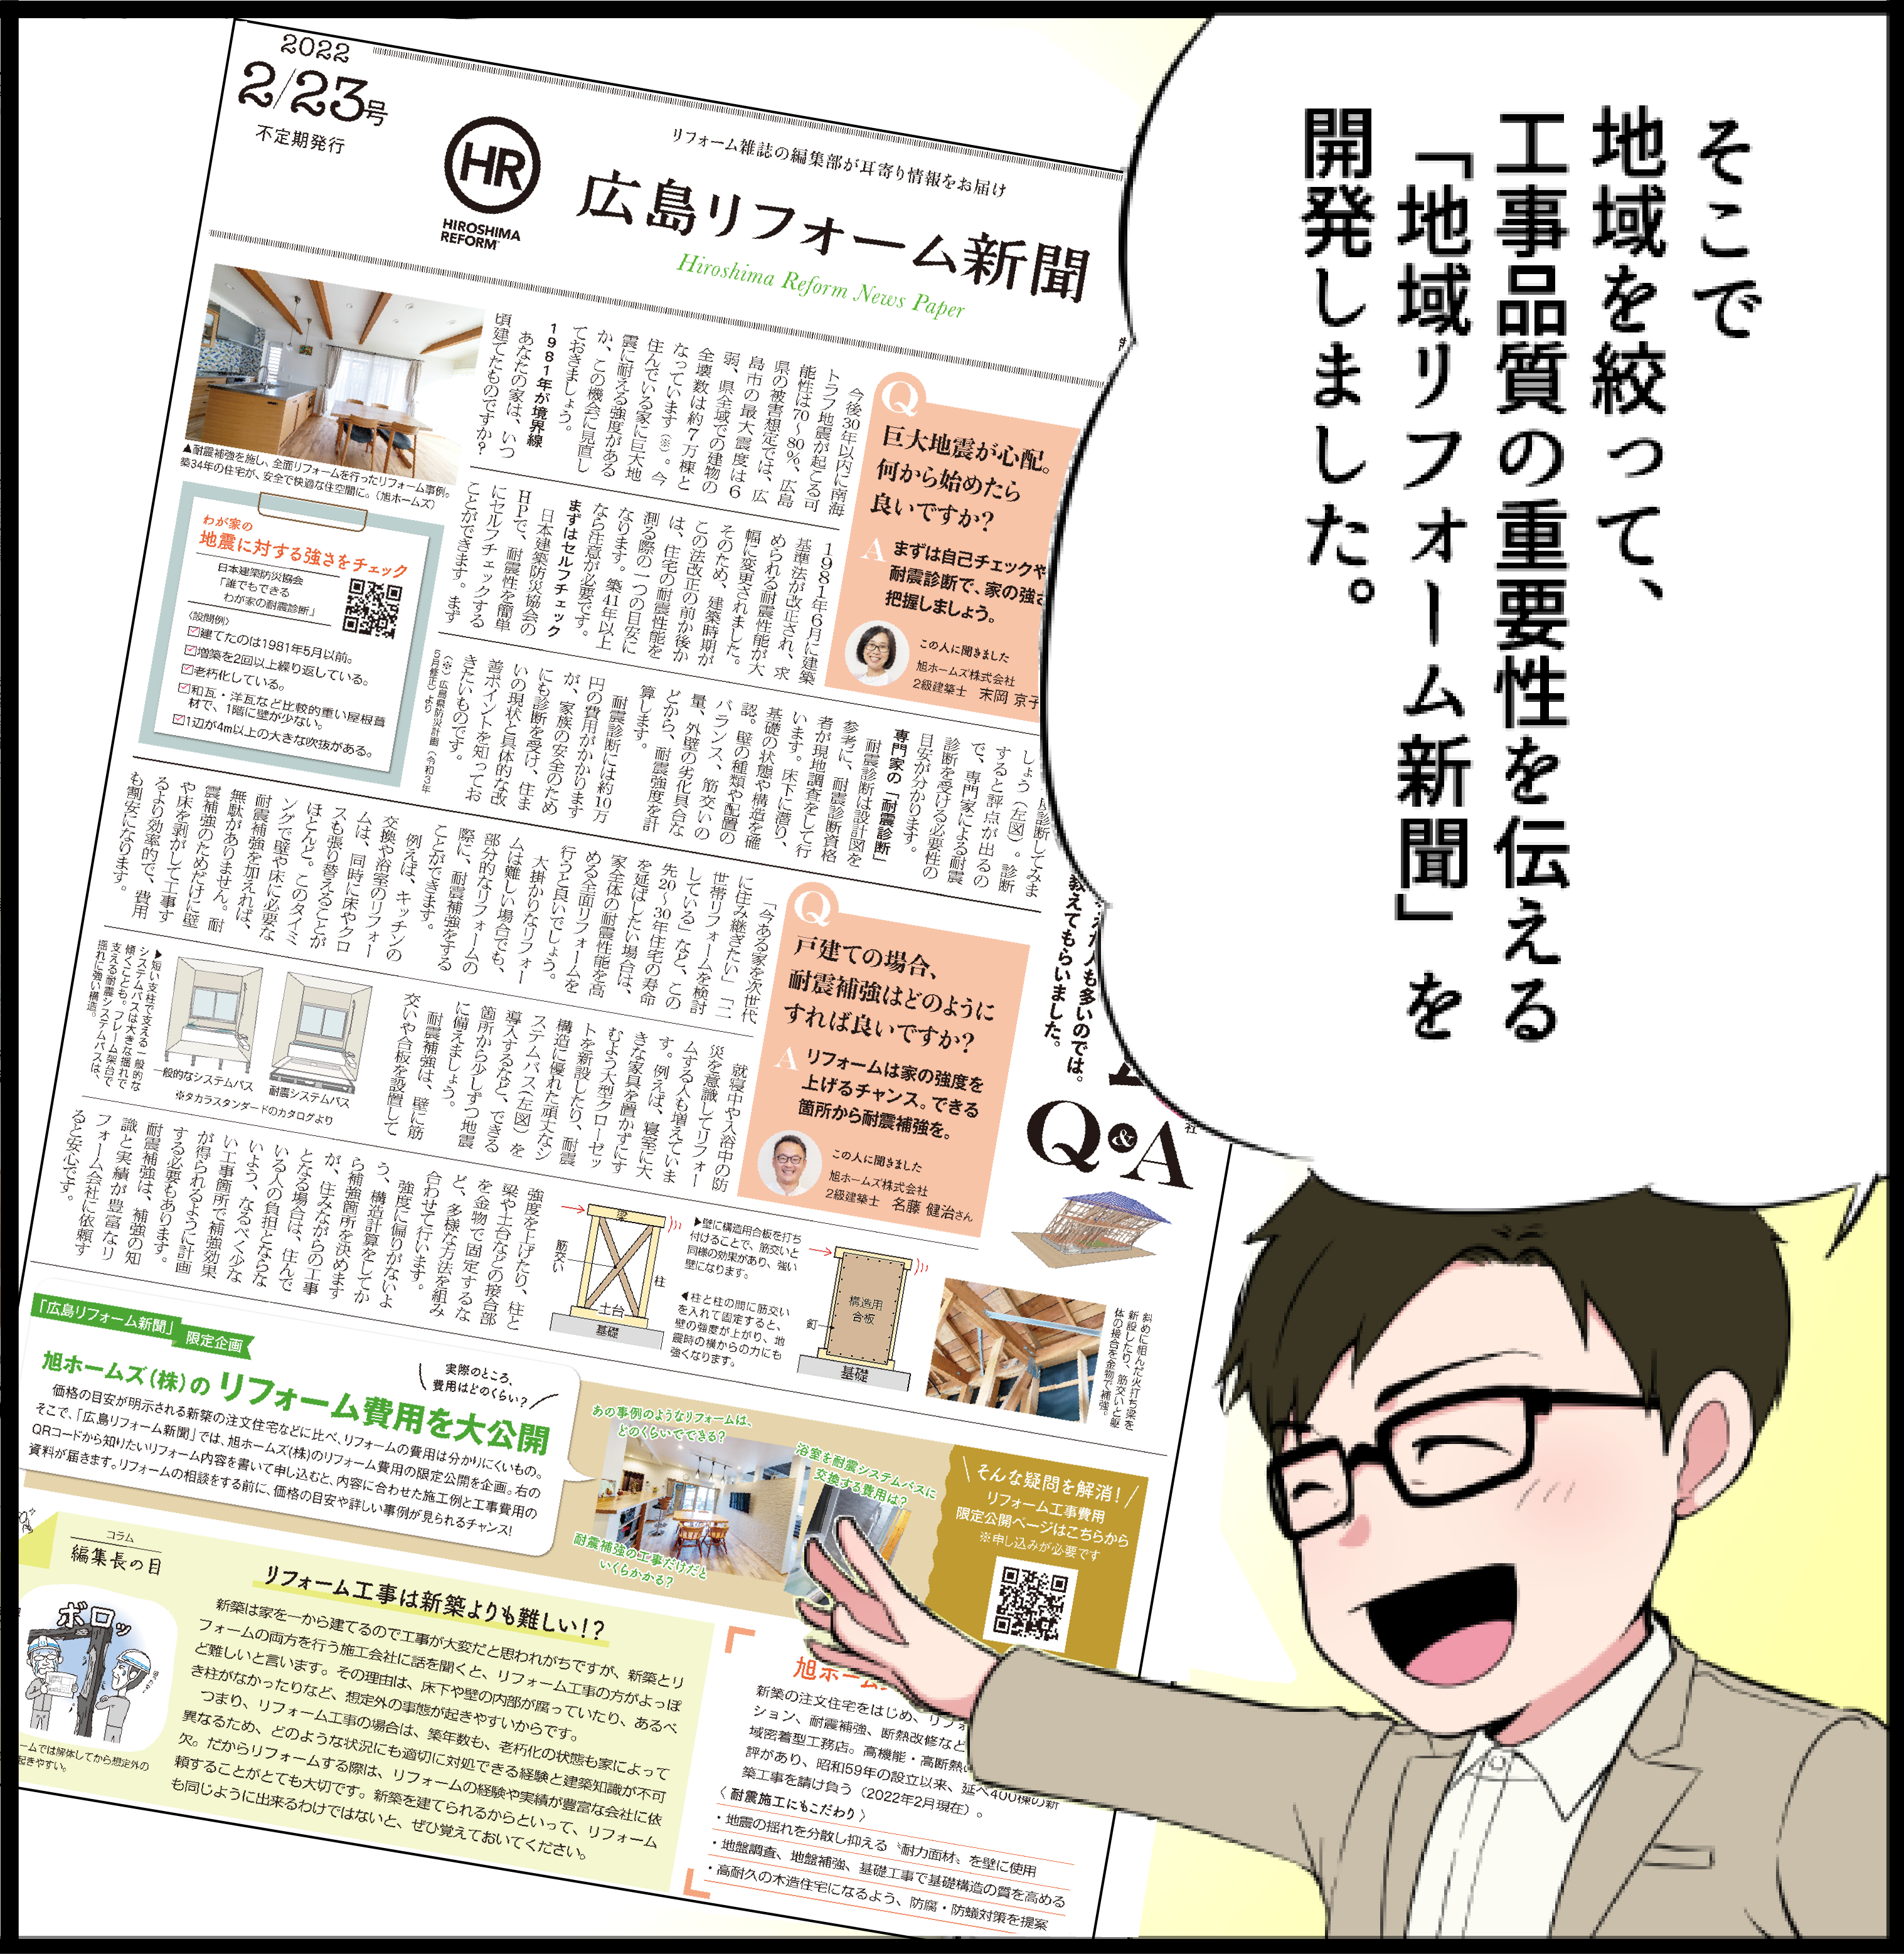 地域リフォーム新聞 漫画説明3_4_1